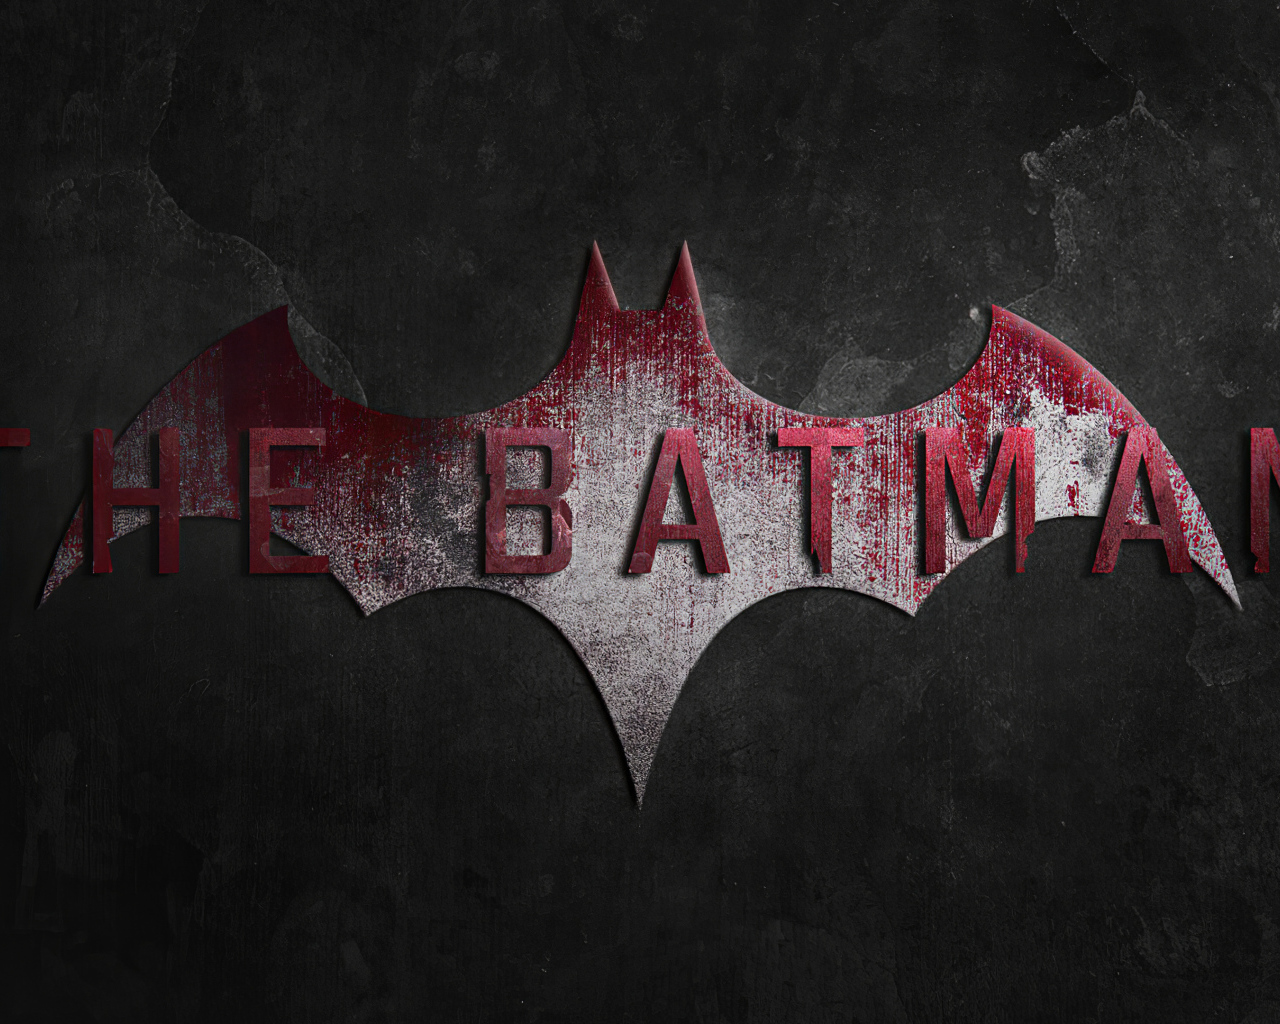 Надпись нового фильма Бэтмен на сером фоне